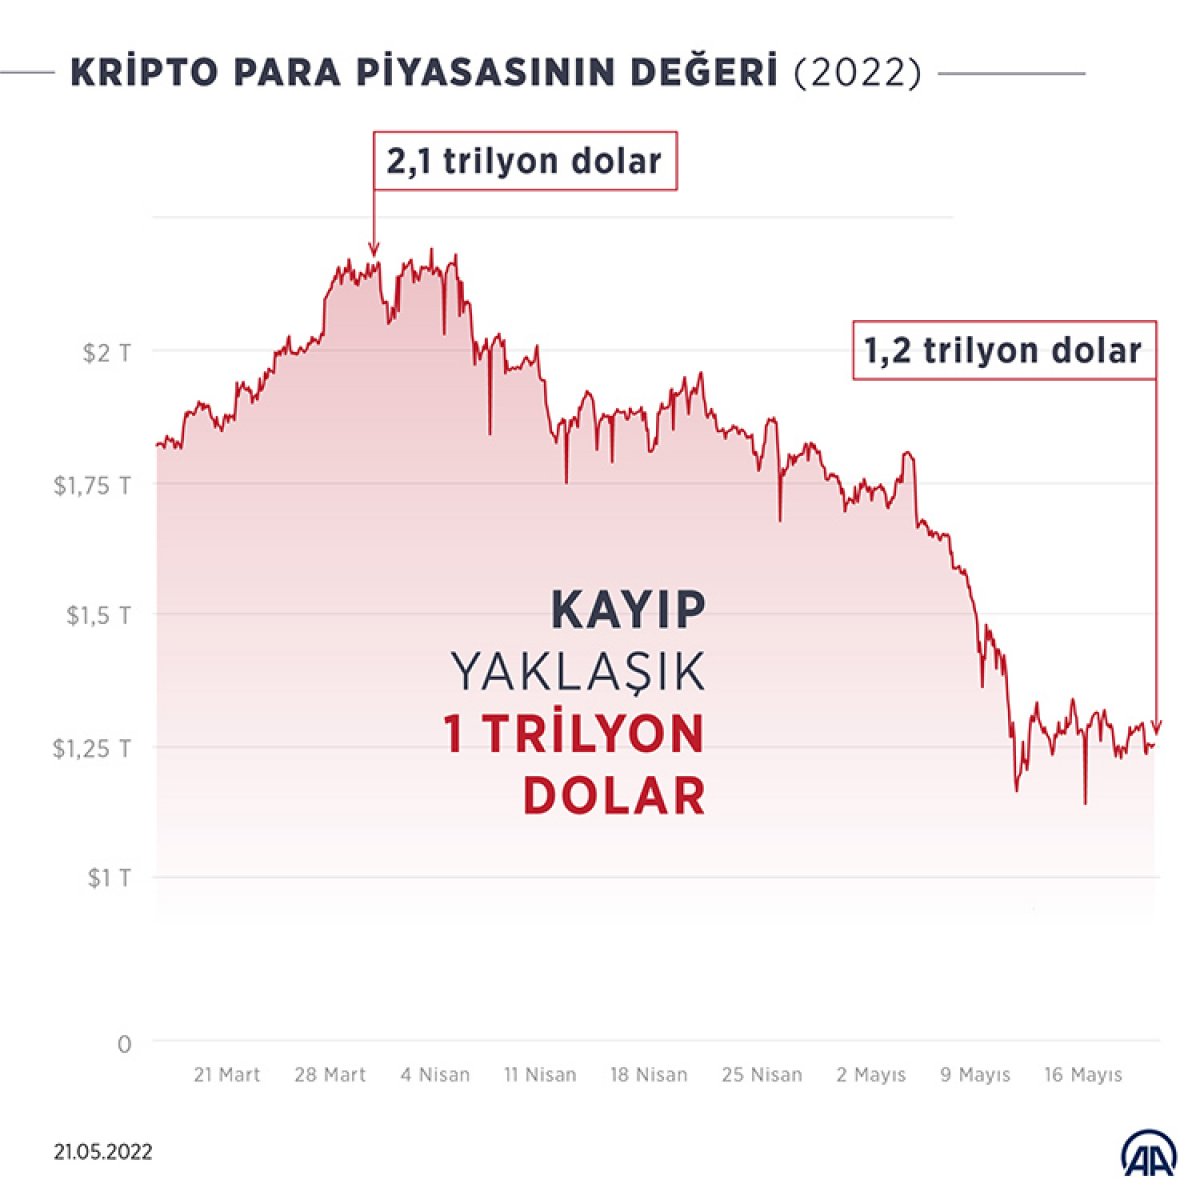 Kripto paralarda 7 haftadır yaşanan kayıp piyasadan 1 trilyon doları sildi